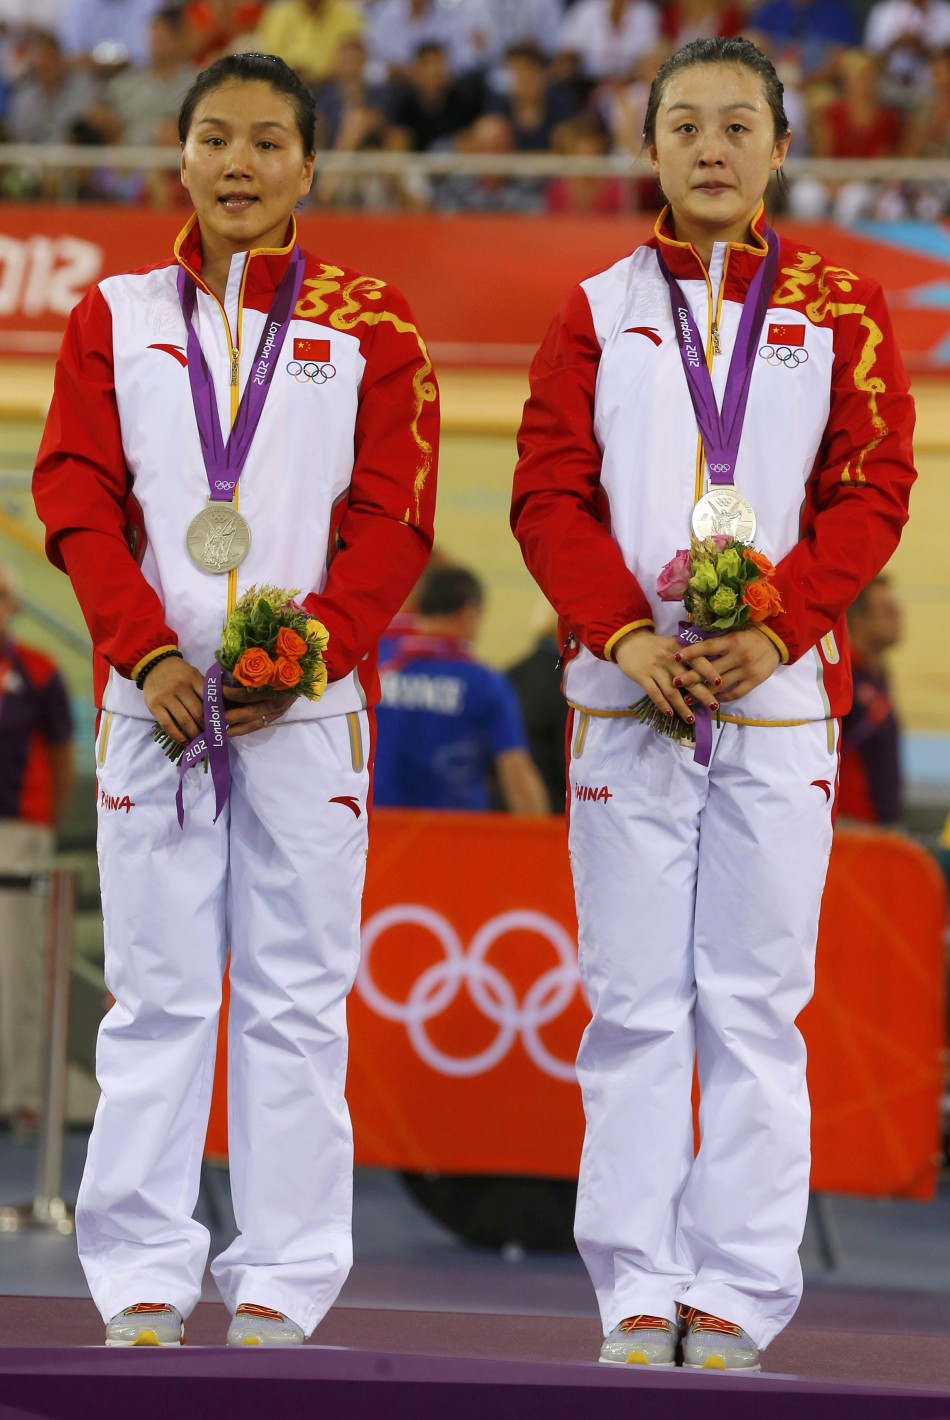 Gong Jinjie and Guo Shuang